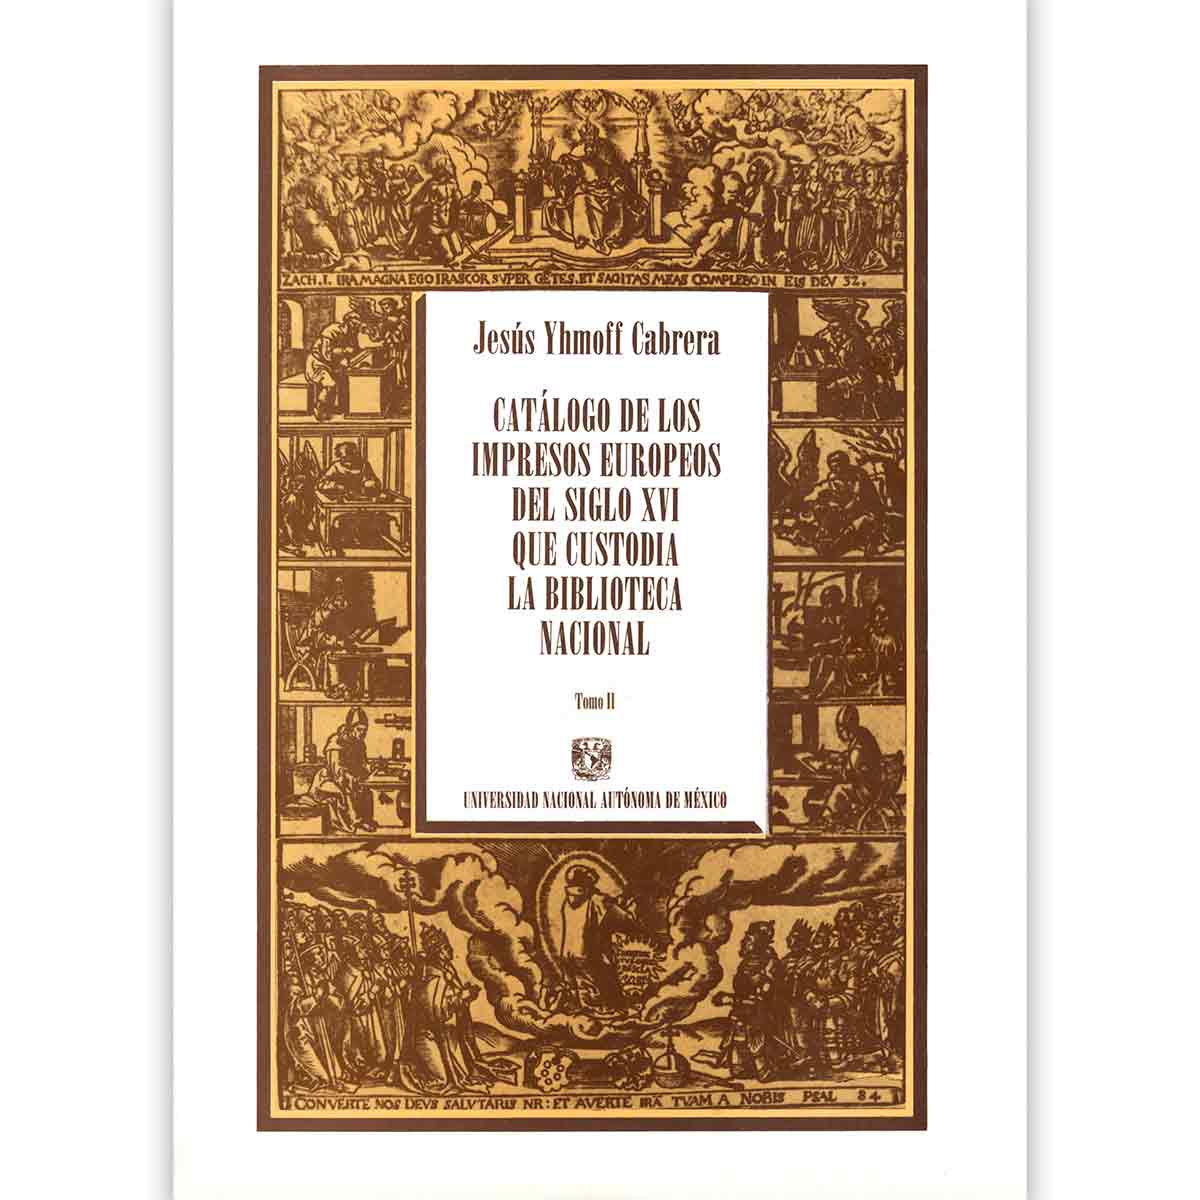 CATÁLOGO DE LOS IMPRESOS EUROPEOS DEL SIGLO XVI QUE CUSTODIA LA BIBLIOTECA NACIONAL. TOMO II